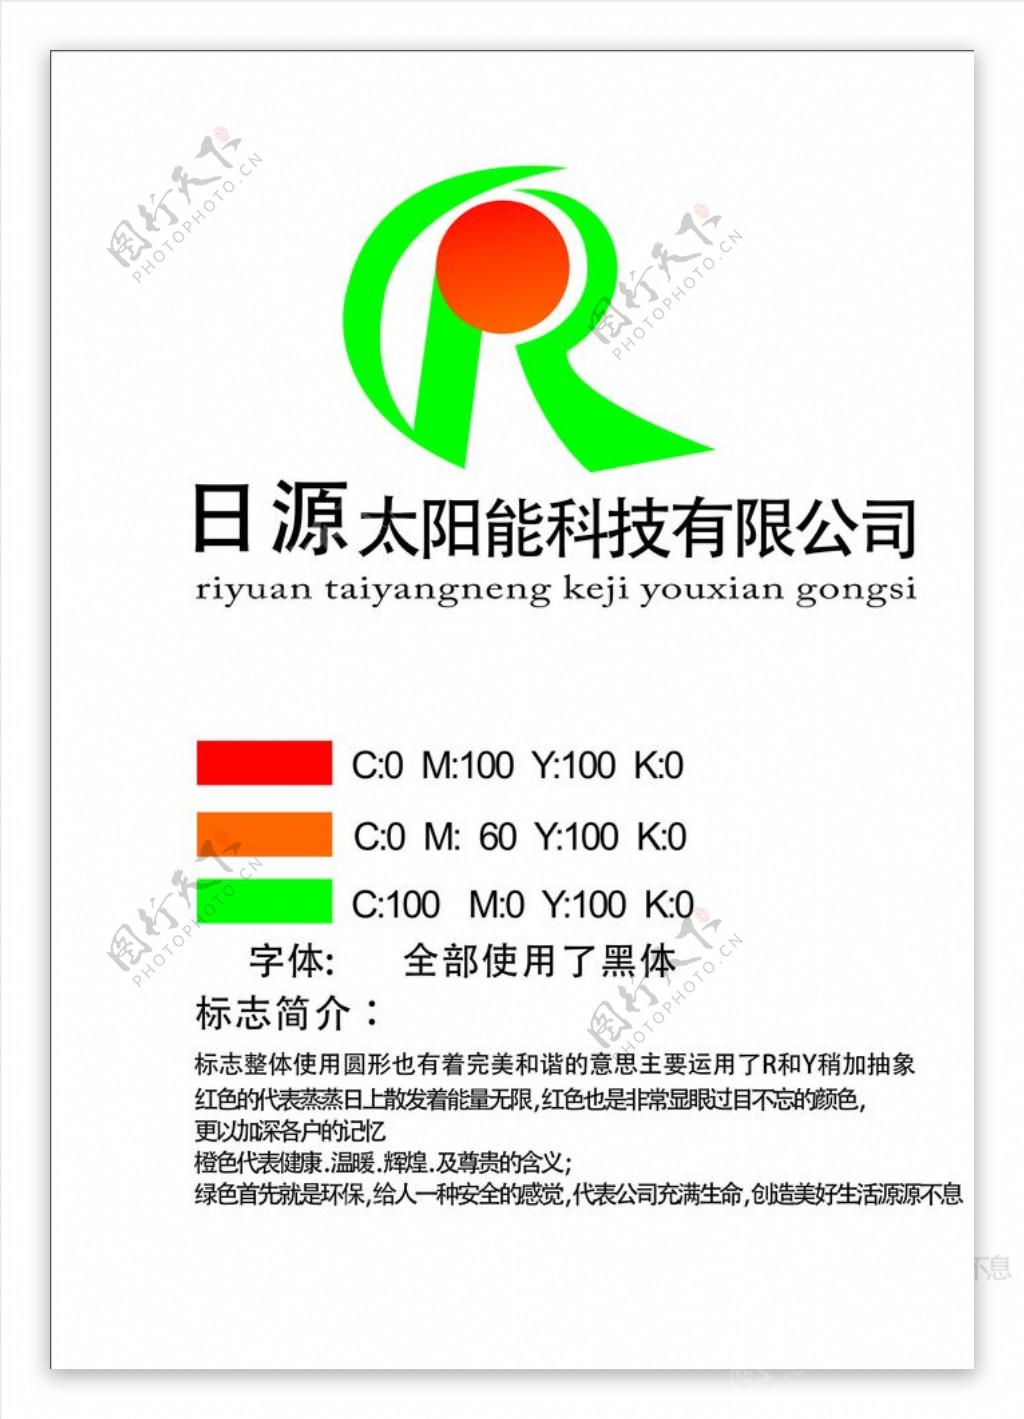 日源logo企业标志品牌标志